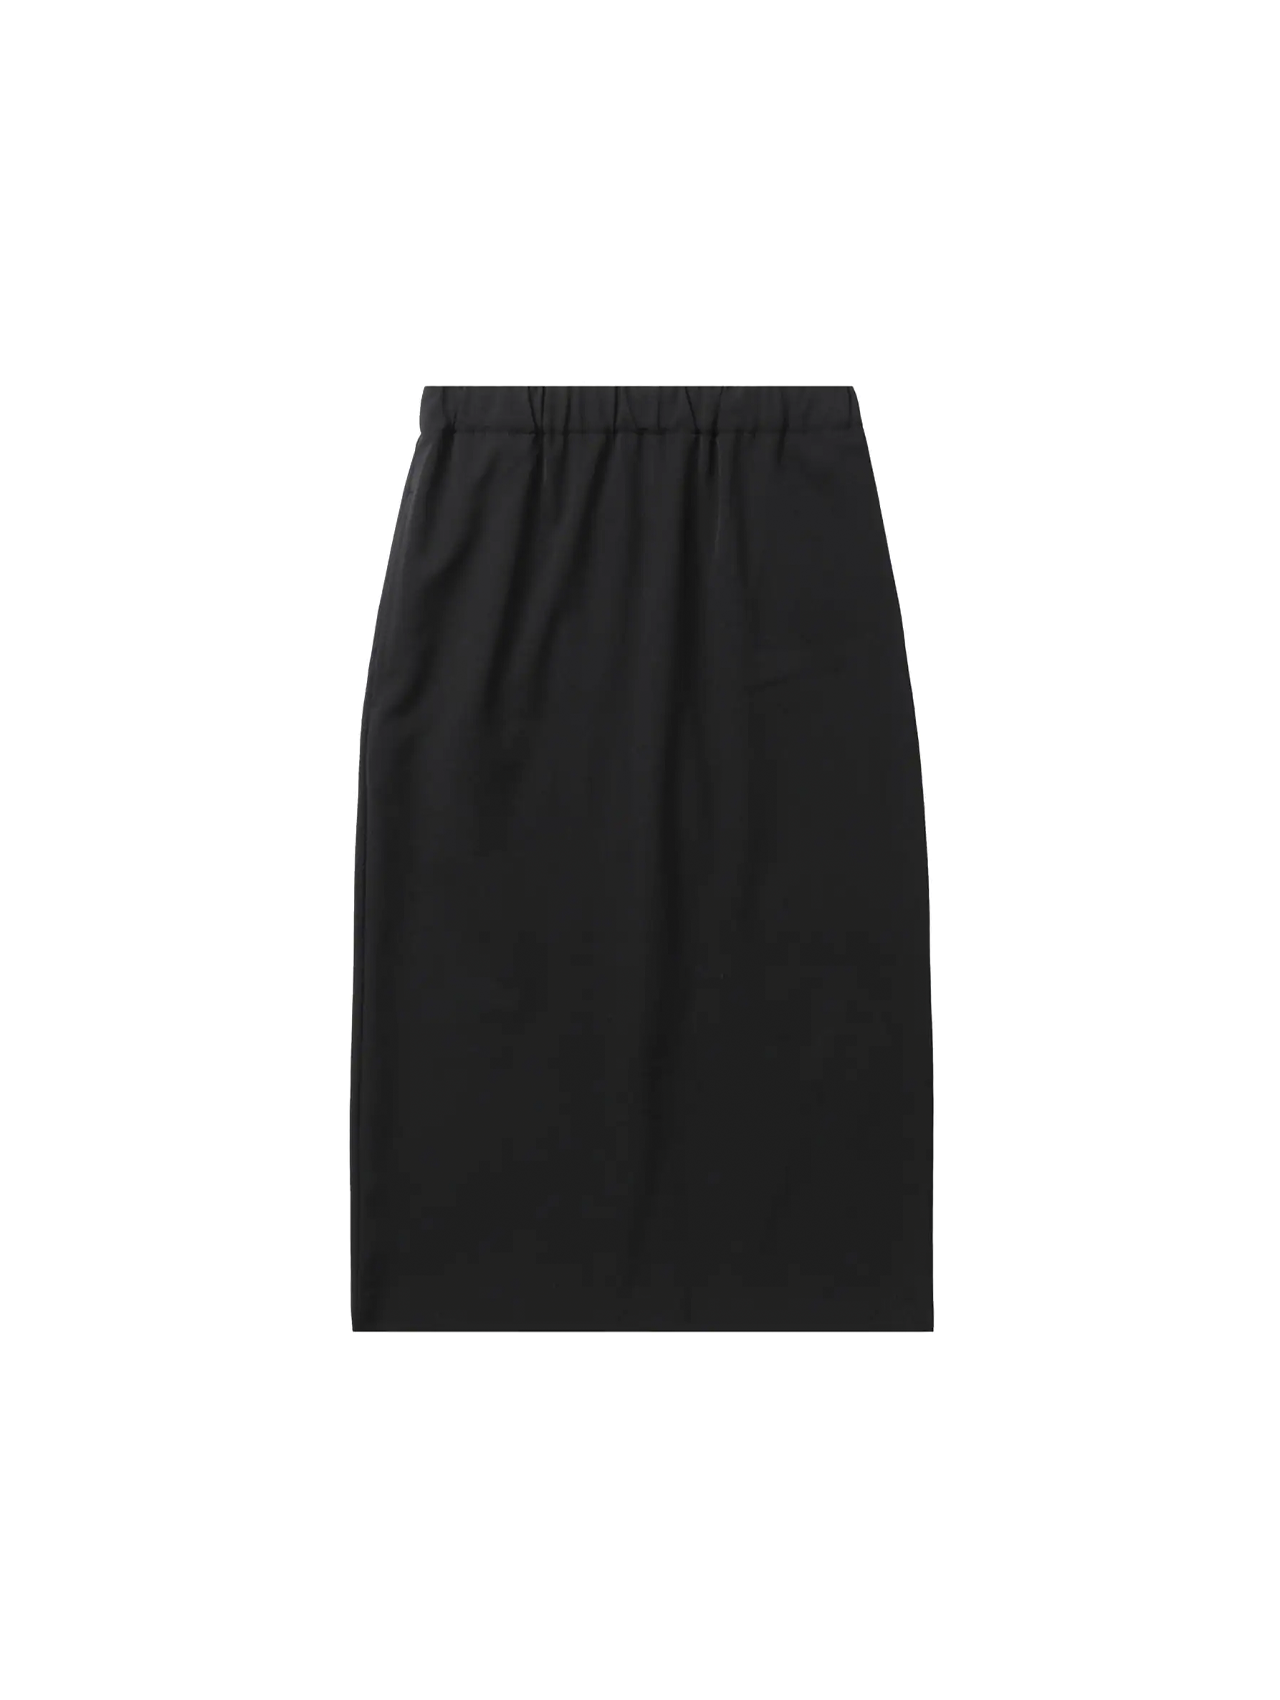 CDG CDG Black Wool Blend Skirt